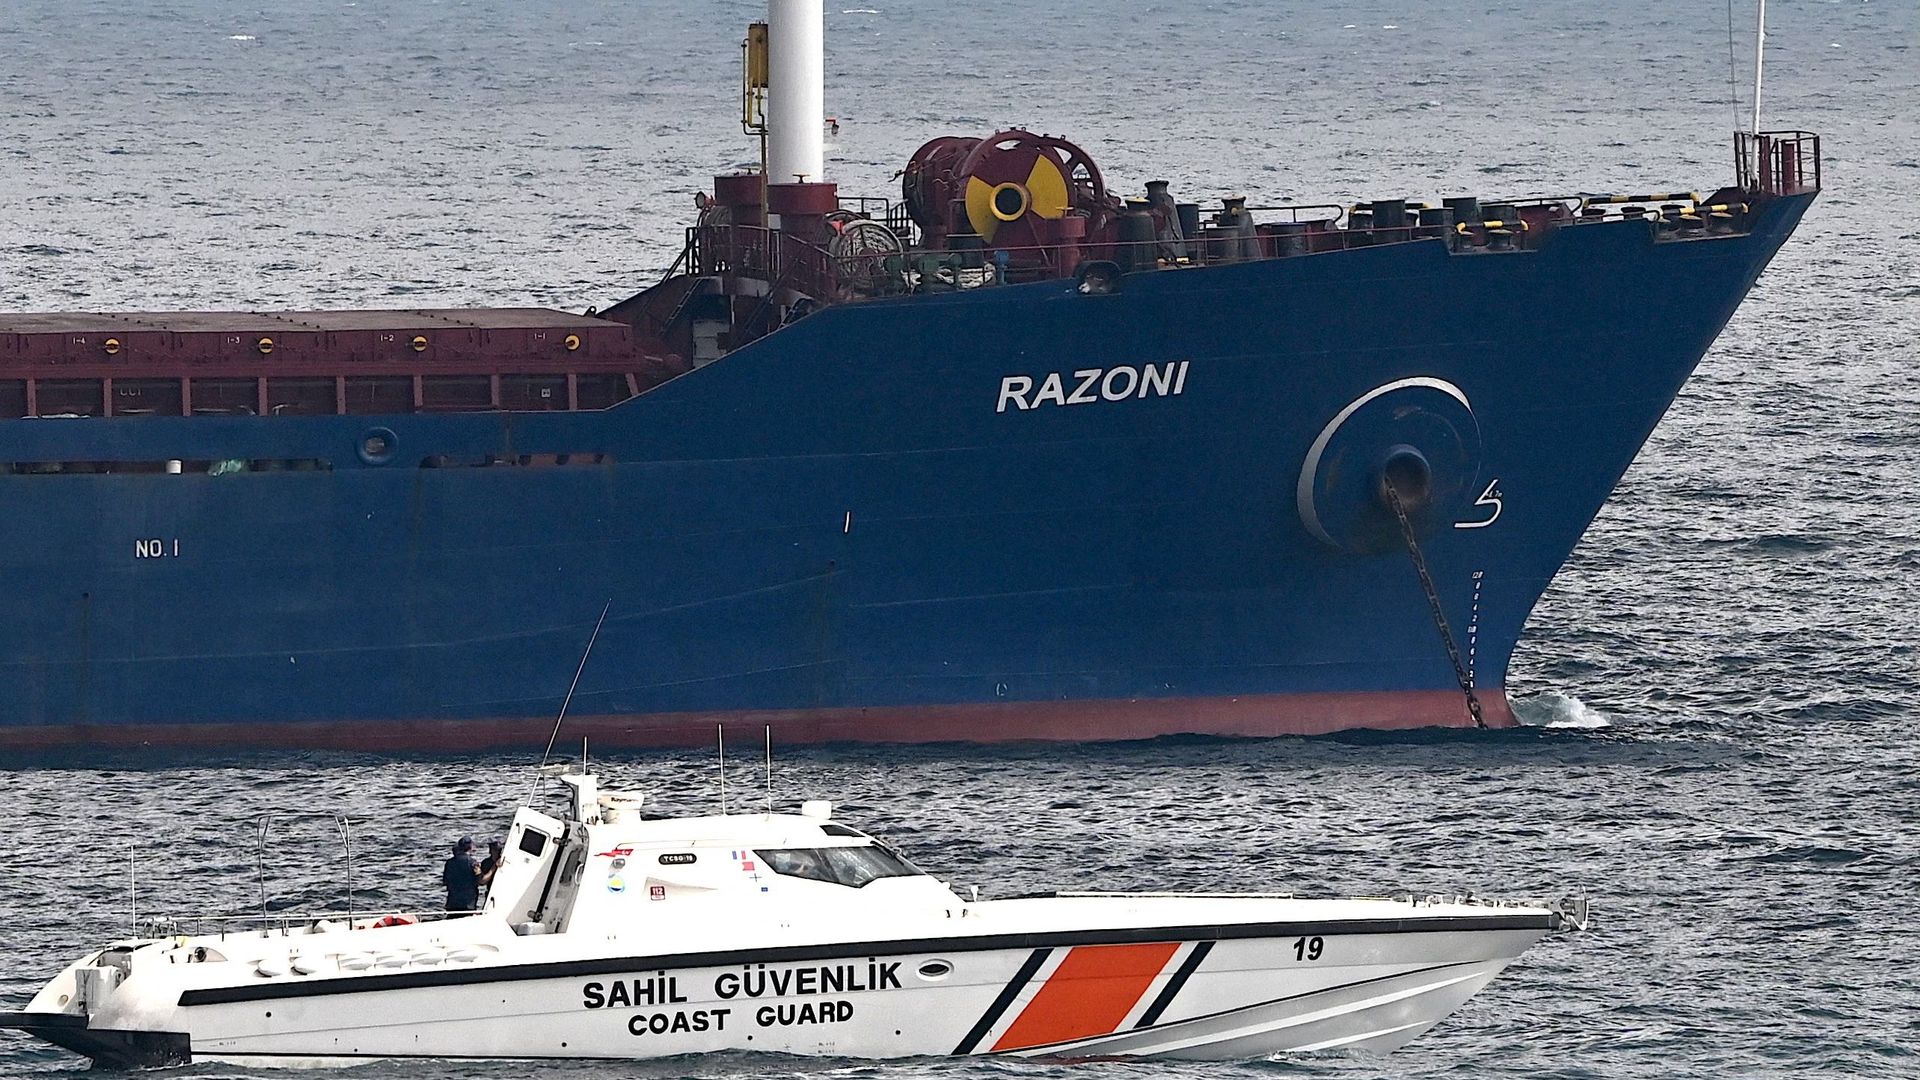 Un bateau des garde-côtes près du cargo Razoni